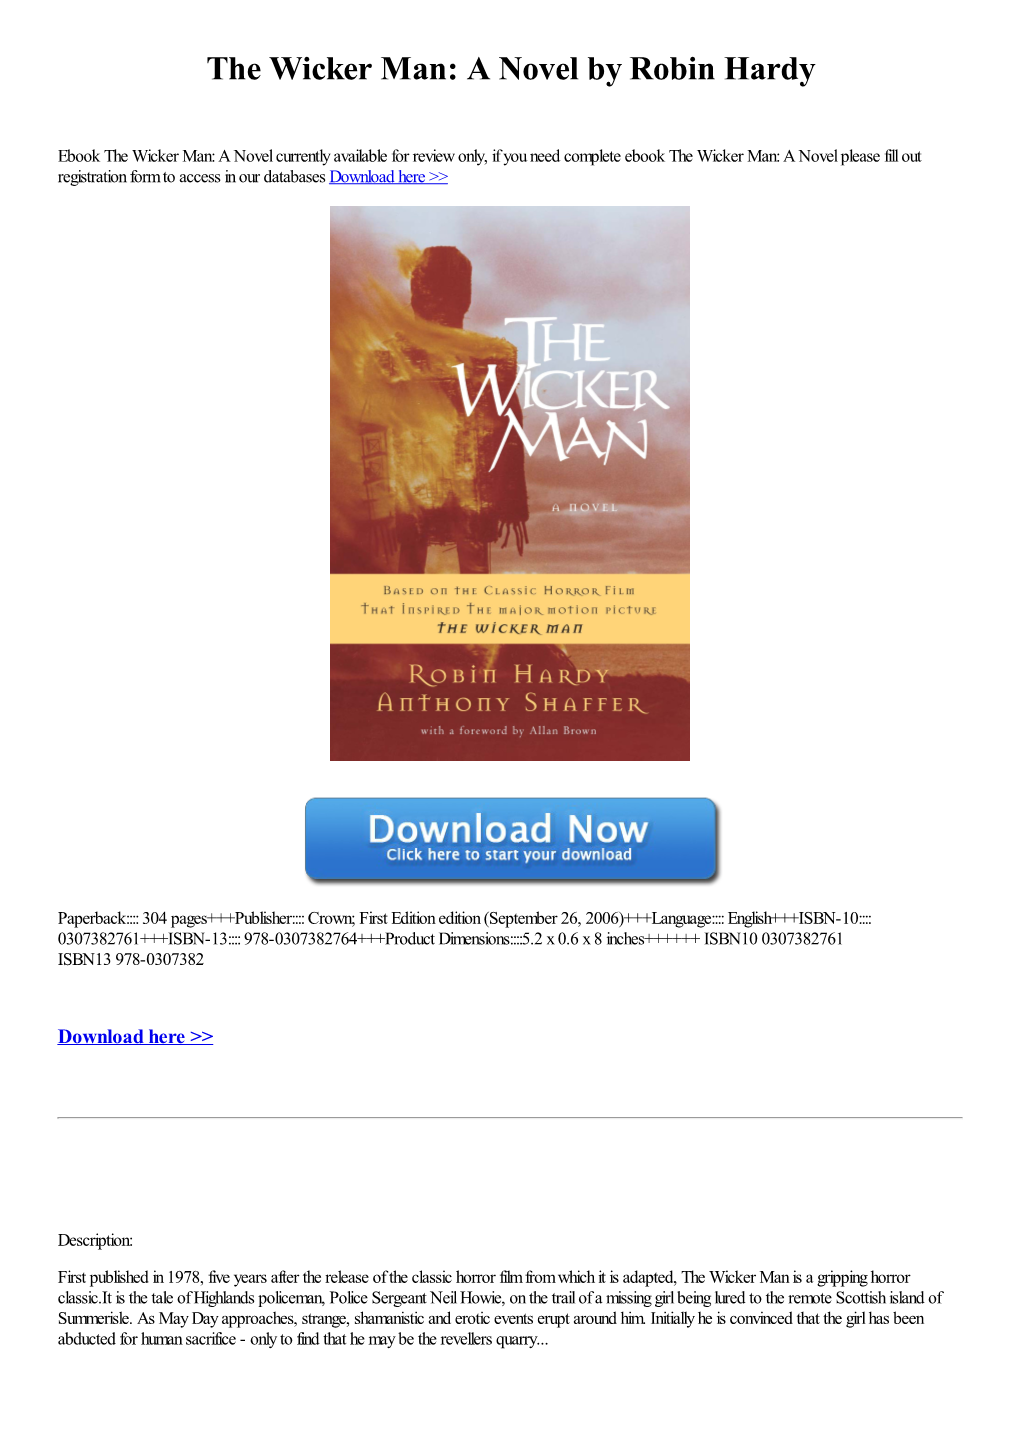 The Wicker Man: a Novel by Robin Hardy